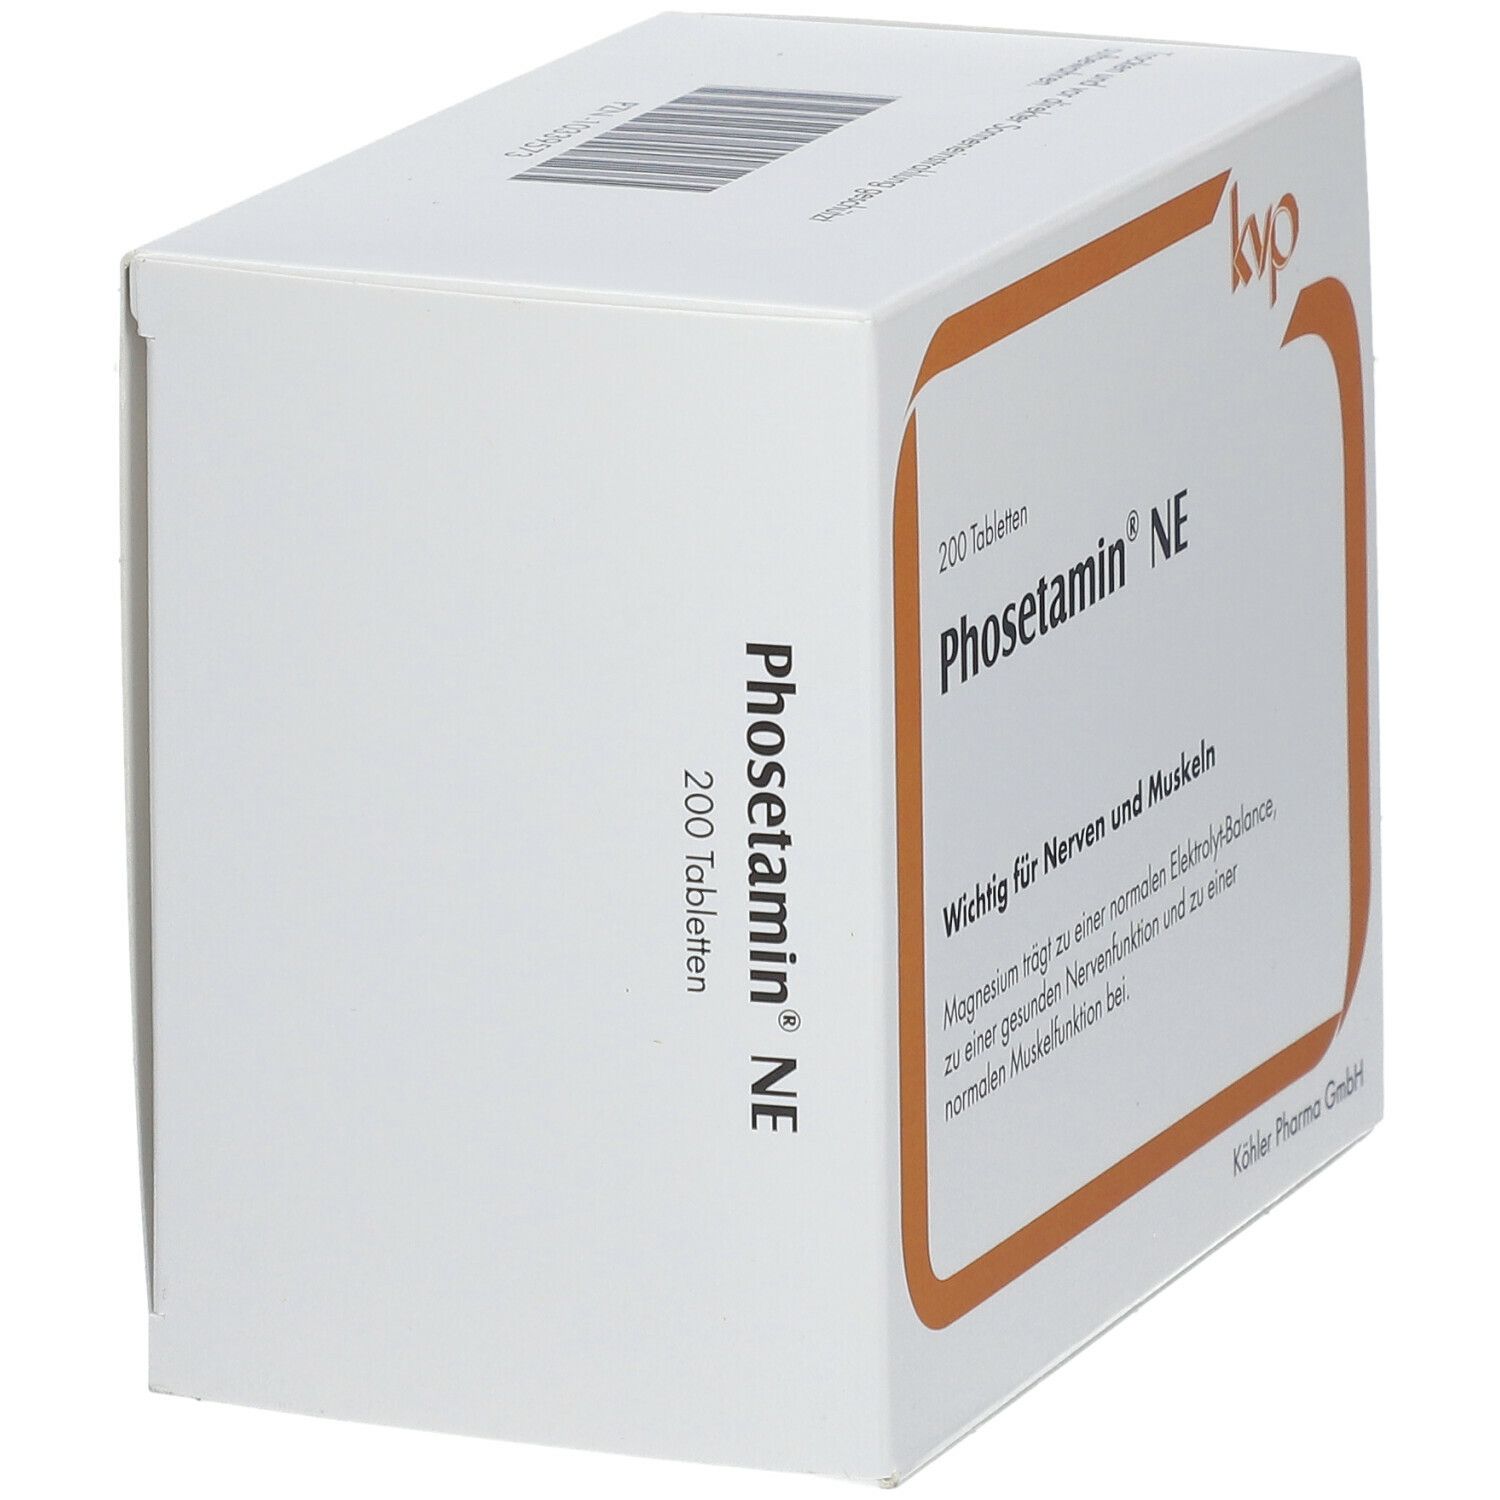 Phosetamin® NE Tabletten